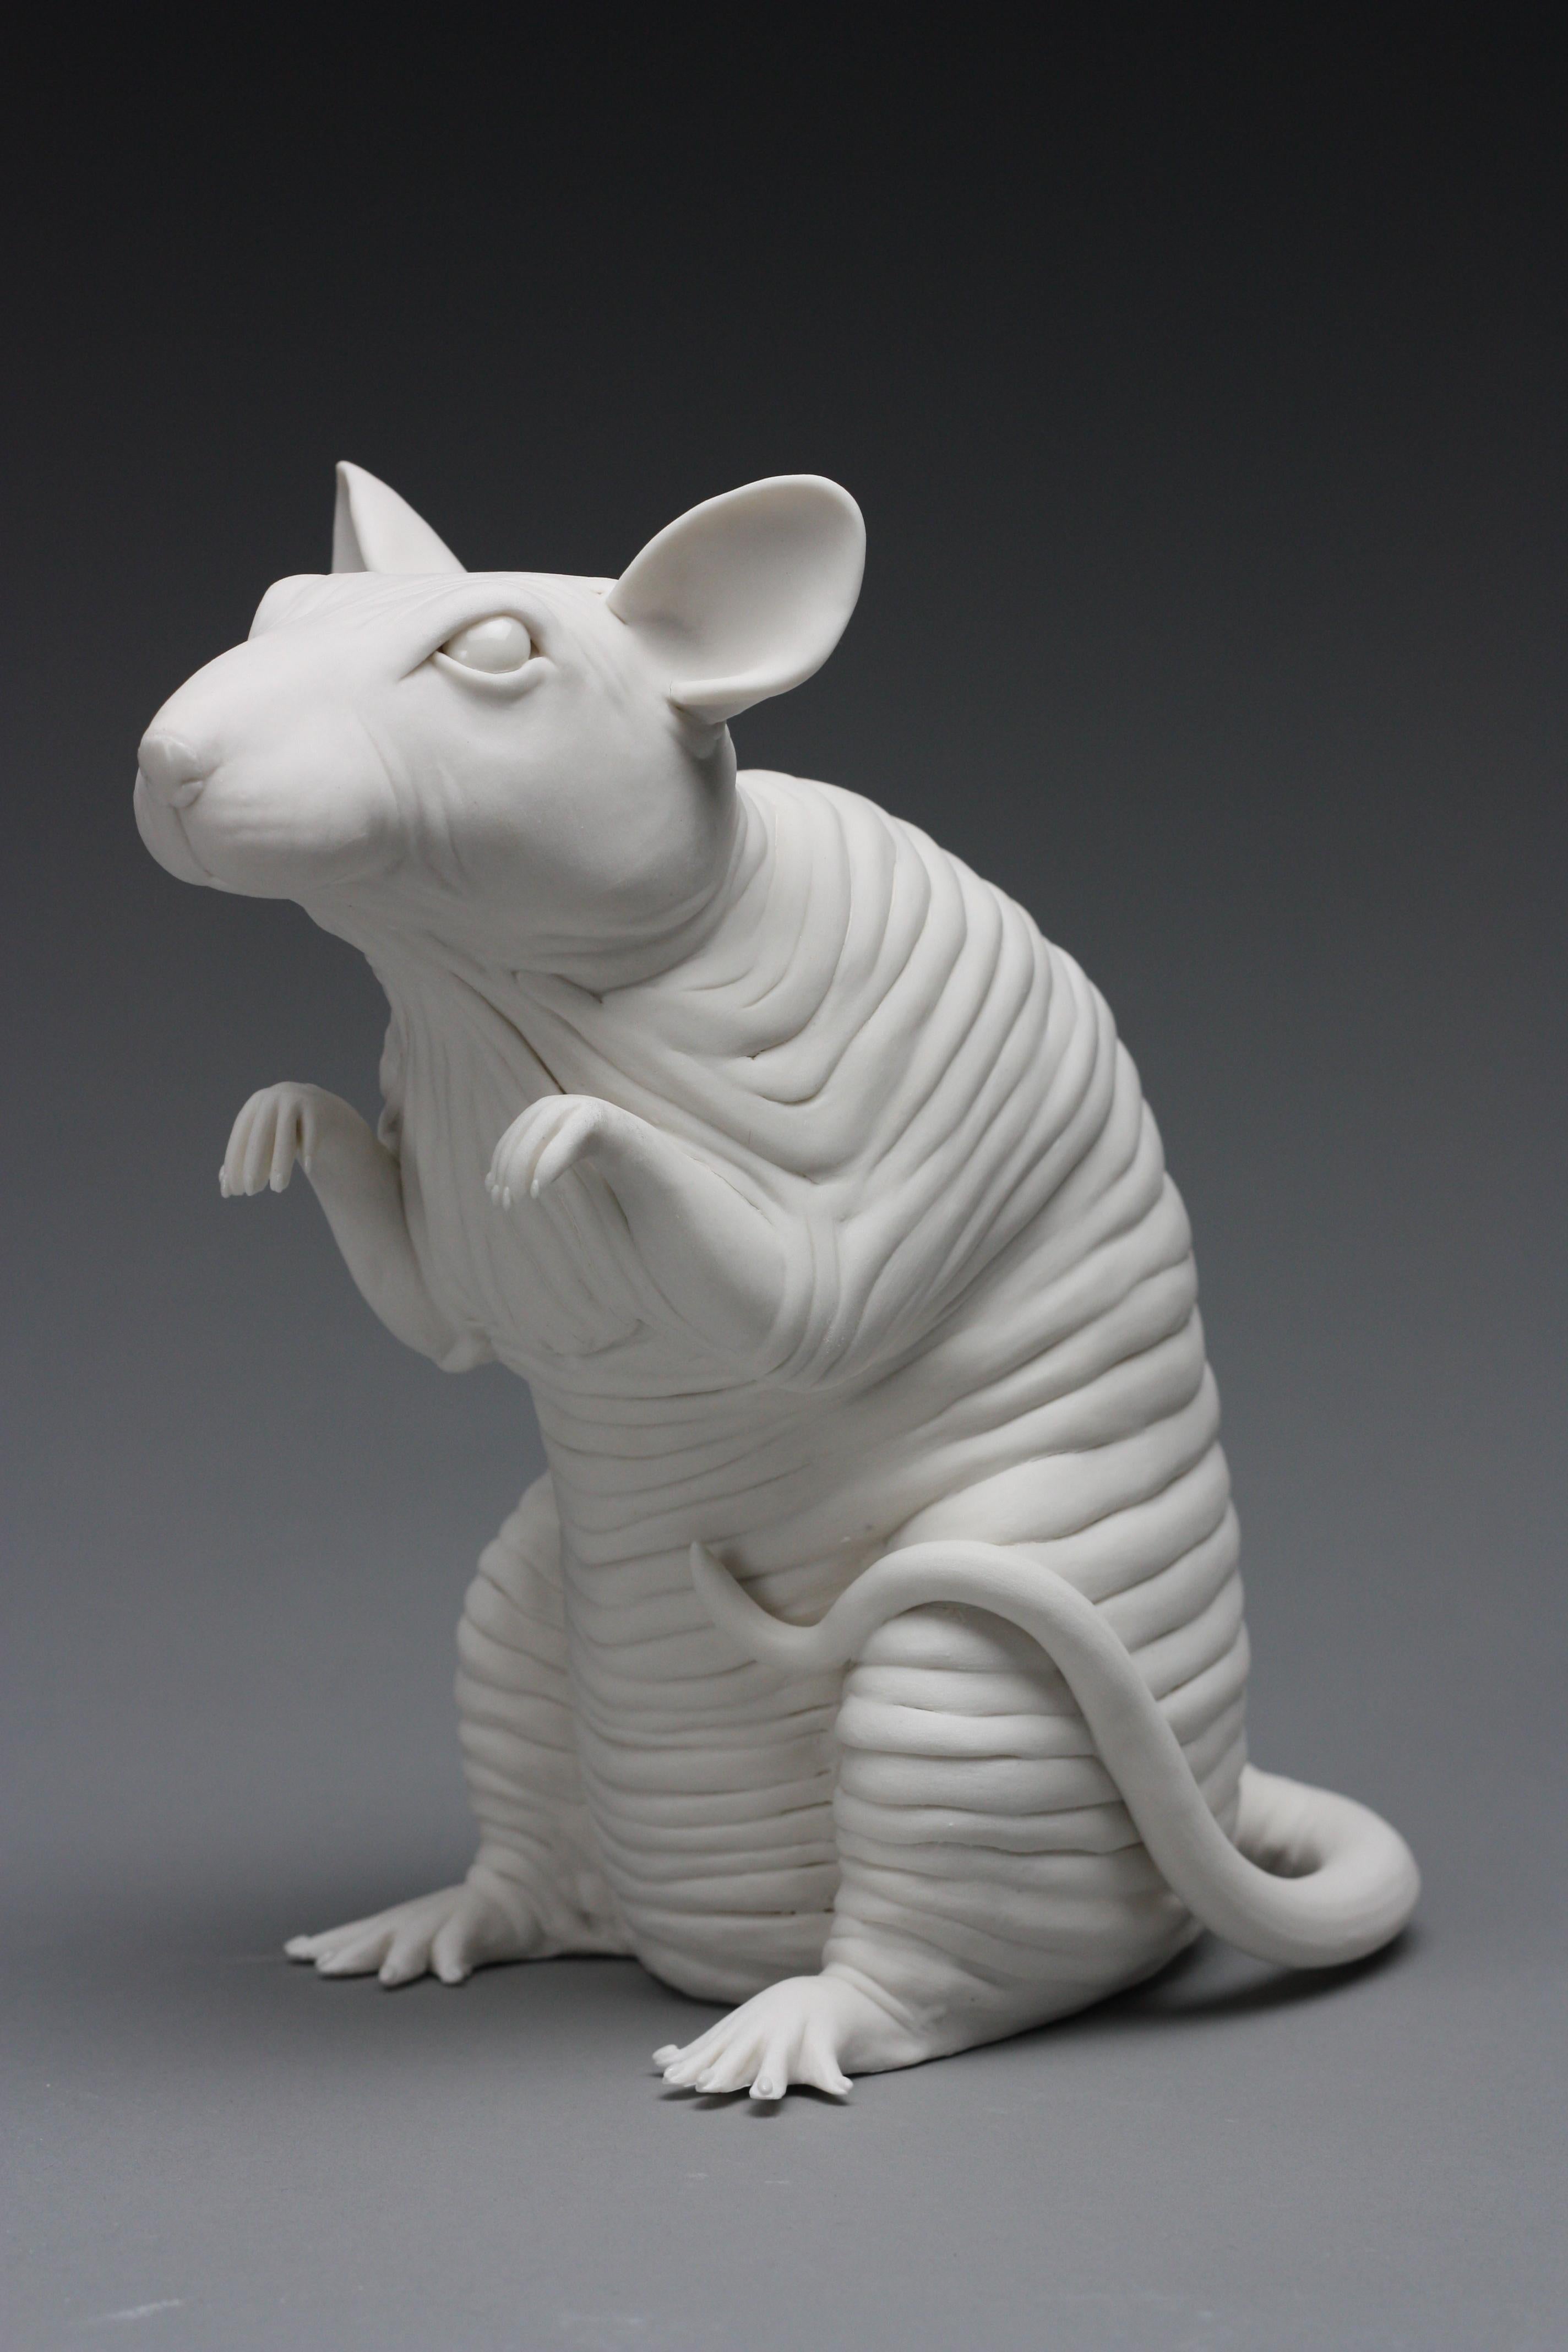 Esta exquisita escultura de porcelana, sin pelo y con forma de rata, está hecha a mano sin utilizar moldes por la artista neoyorquina Bethany Krull.  La porcelana superblanca está construida sólidamente sobre un sistema de armaduras.  Una vez que